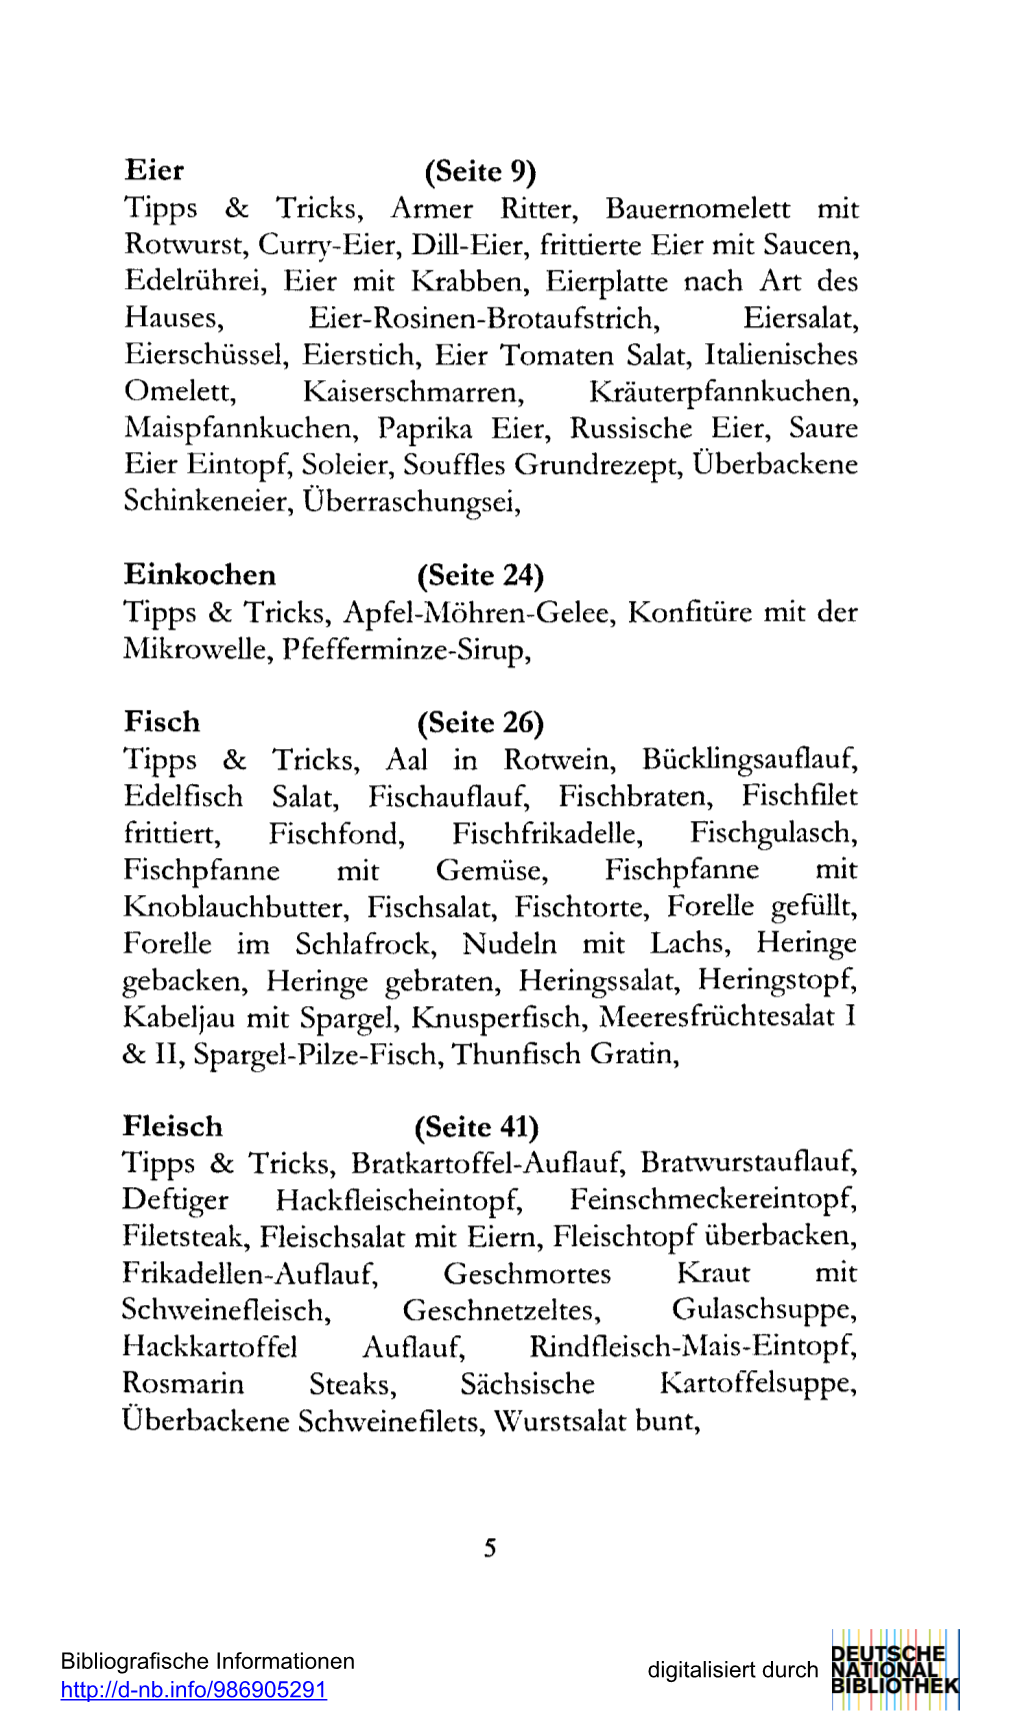 Eier (Seite 9) Tipps & Tricks, Armer Ritter, Bauernomelett Mit Rotwurst